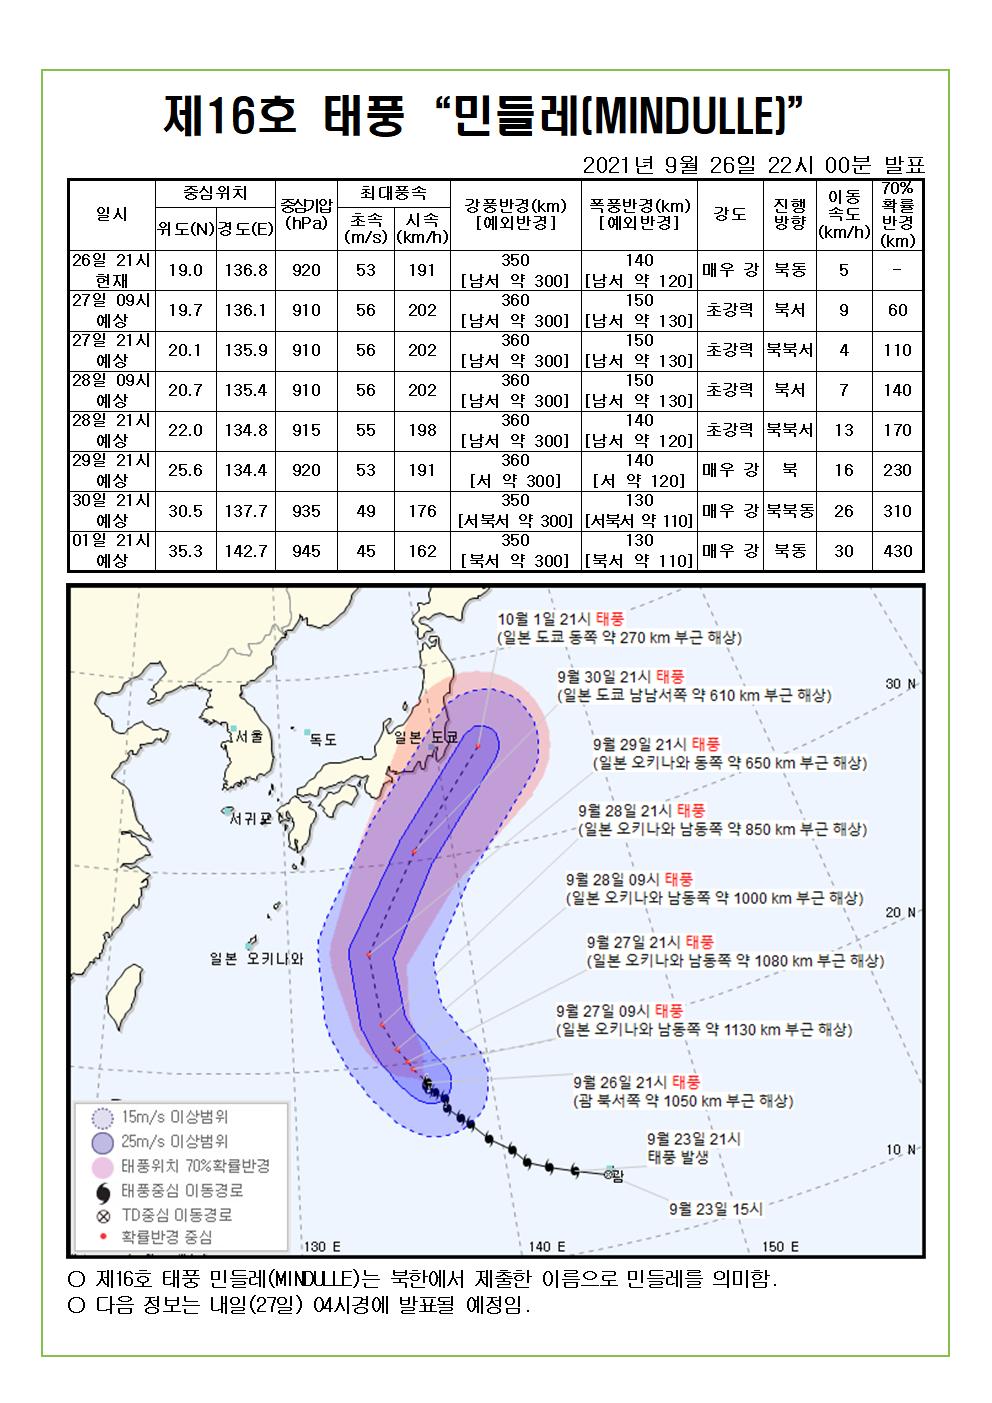 제16호 태풍 민들레 예상진로도 9월 26일(일) 22시00분 발표